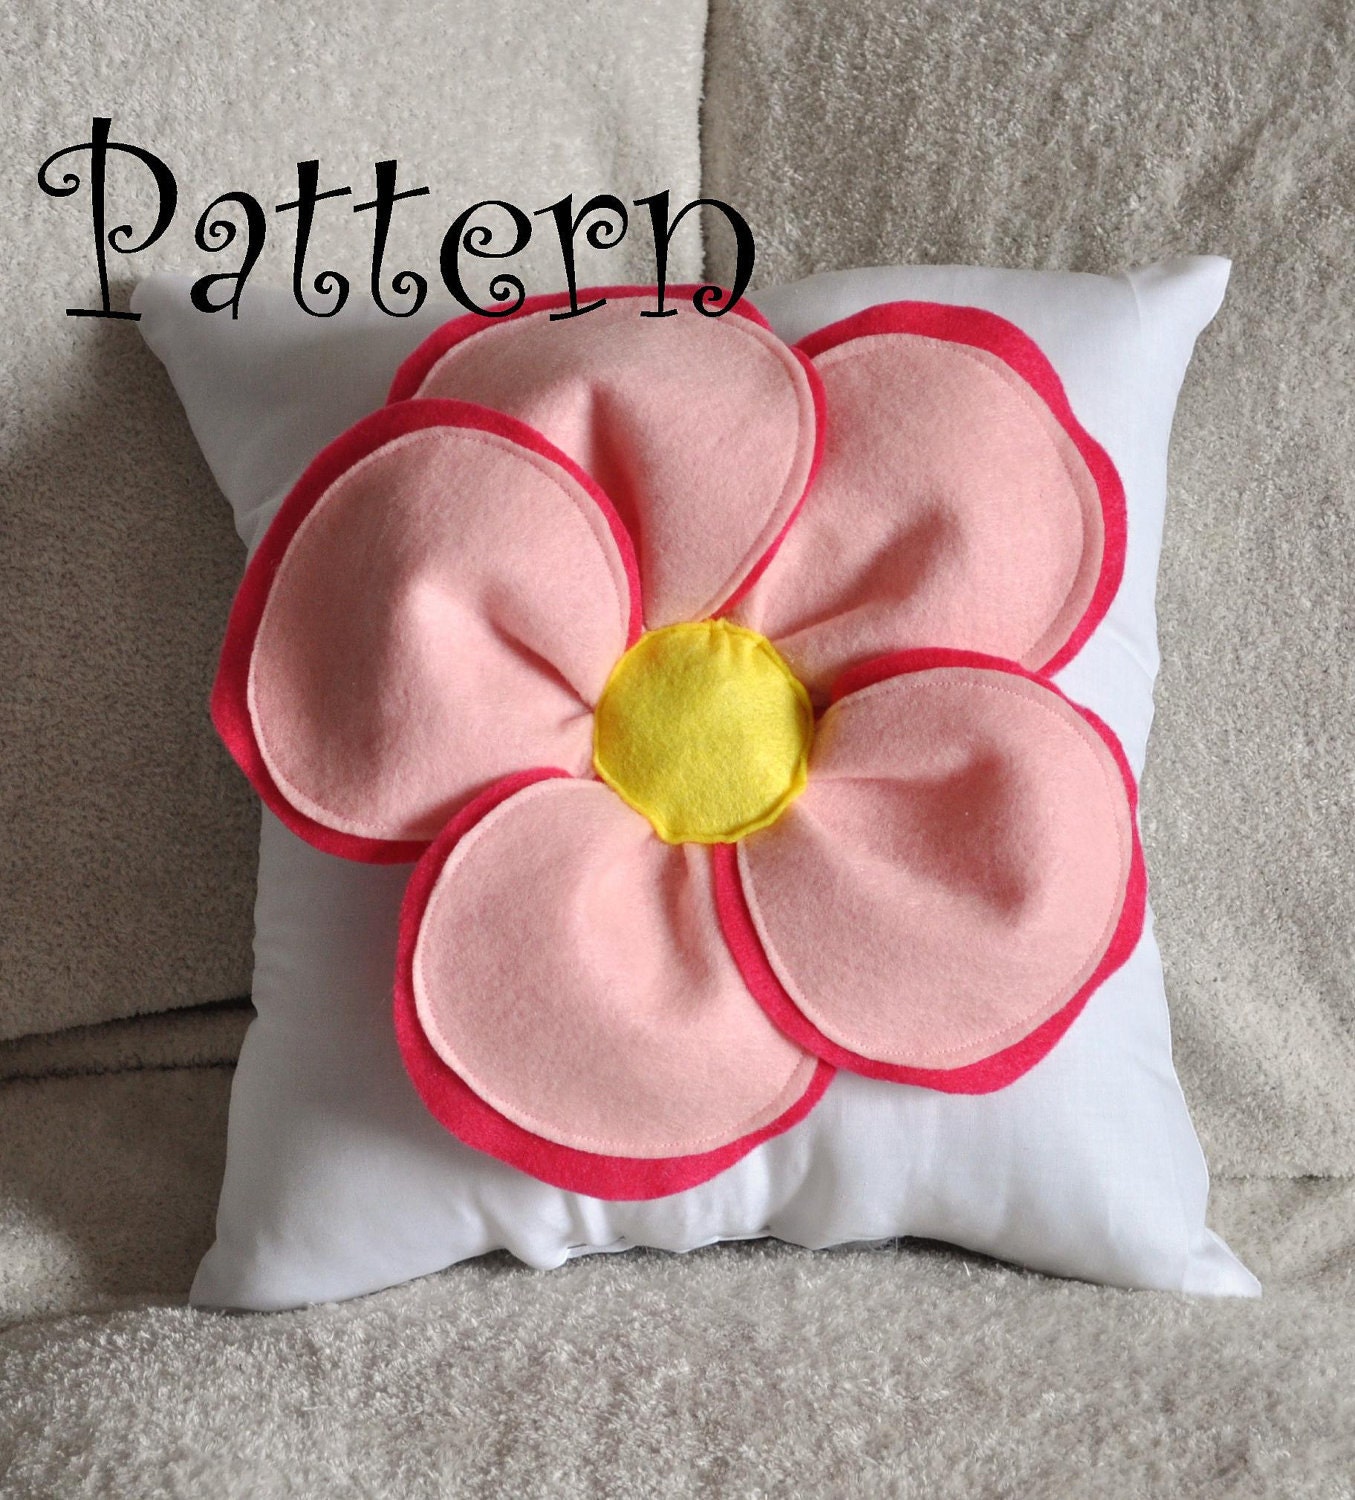 Decorative Pillow Pattern Felt Flower Throw Pillow Tutorial